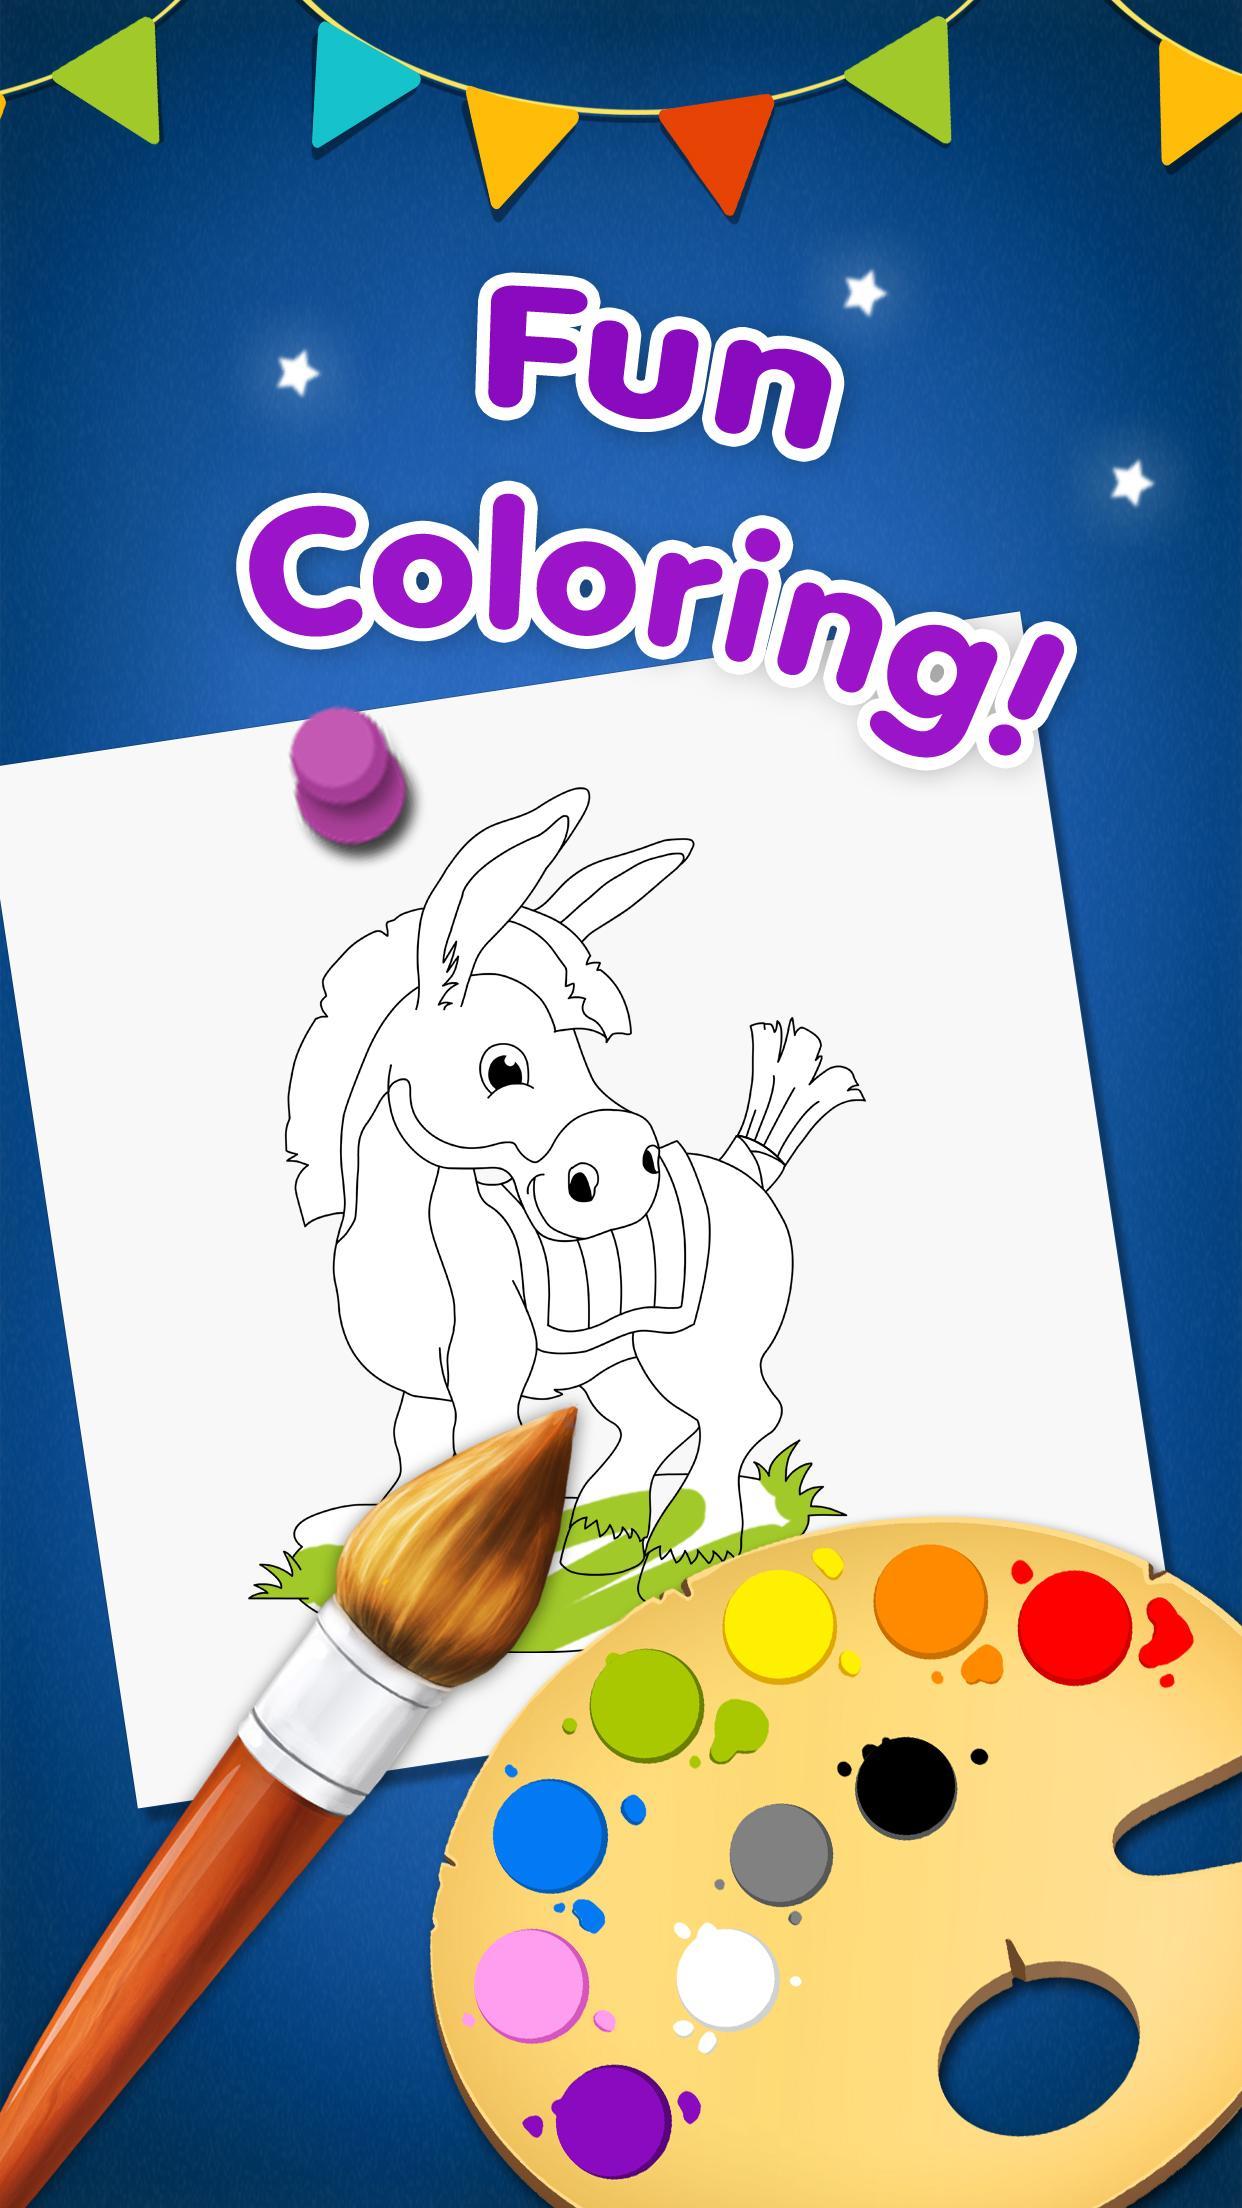 Happy Colors - Coloring Book遊戲截圖